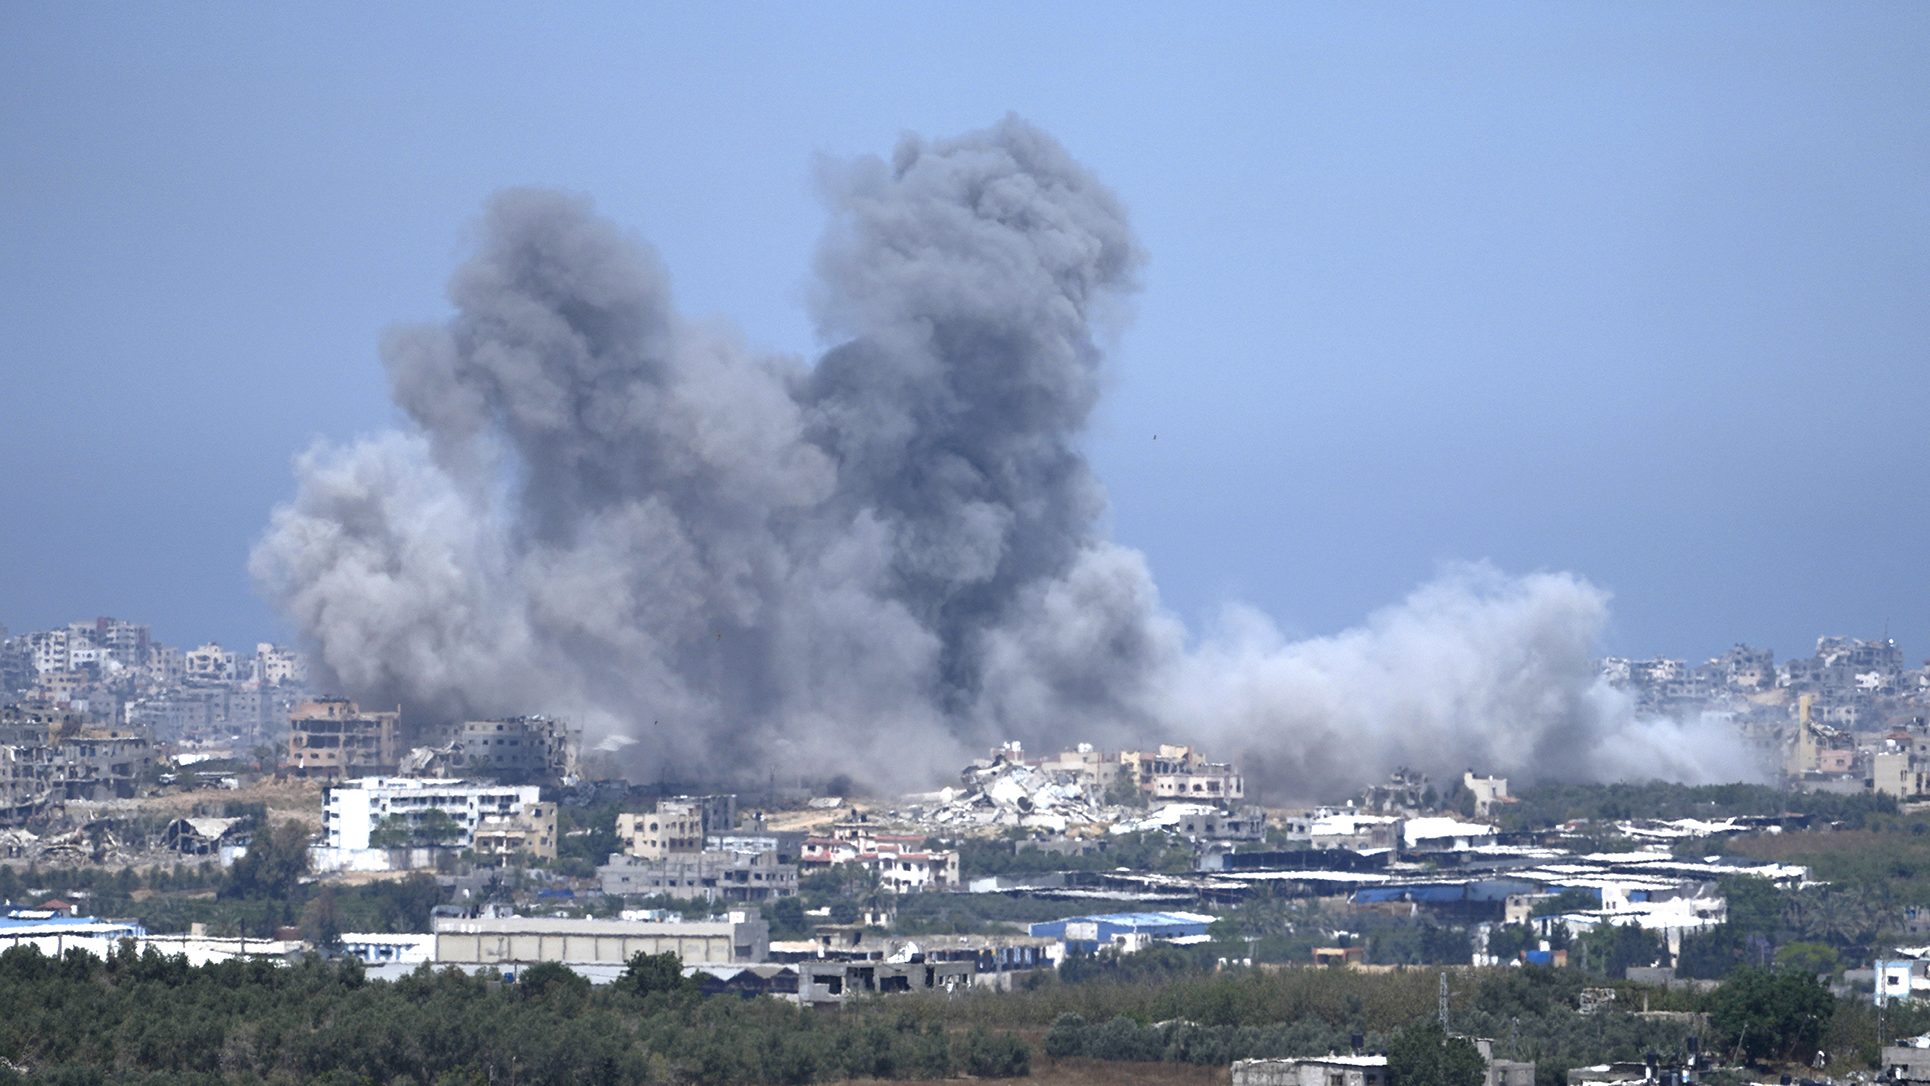 El humo se eleva tras un ataque aéreo israelí en Gaza, visto desde el sur de Israel, el 17 de mayo. Tsafrir Abayov/AP